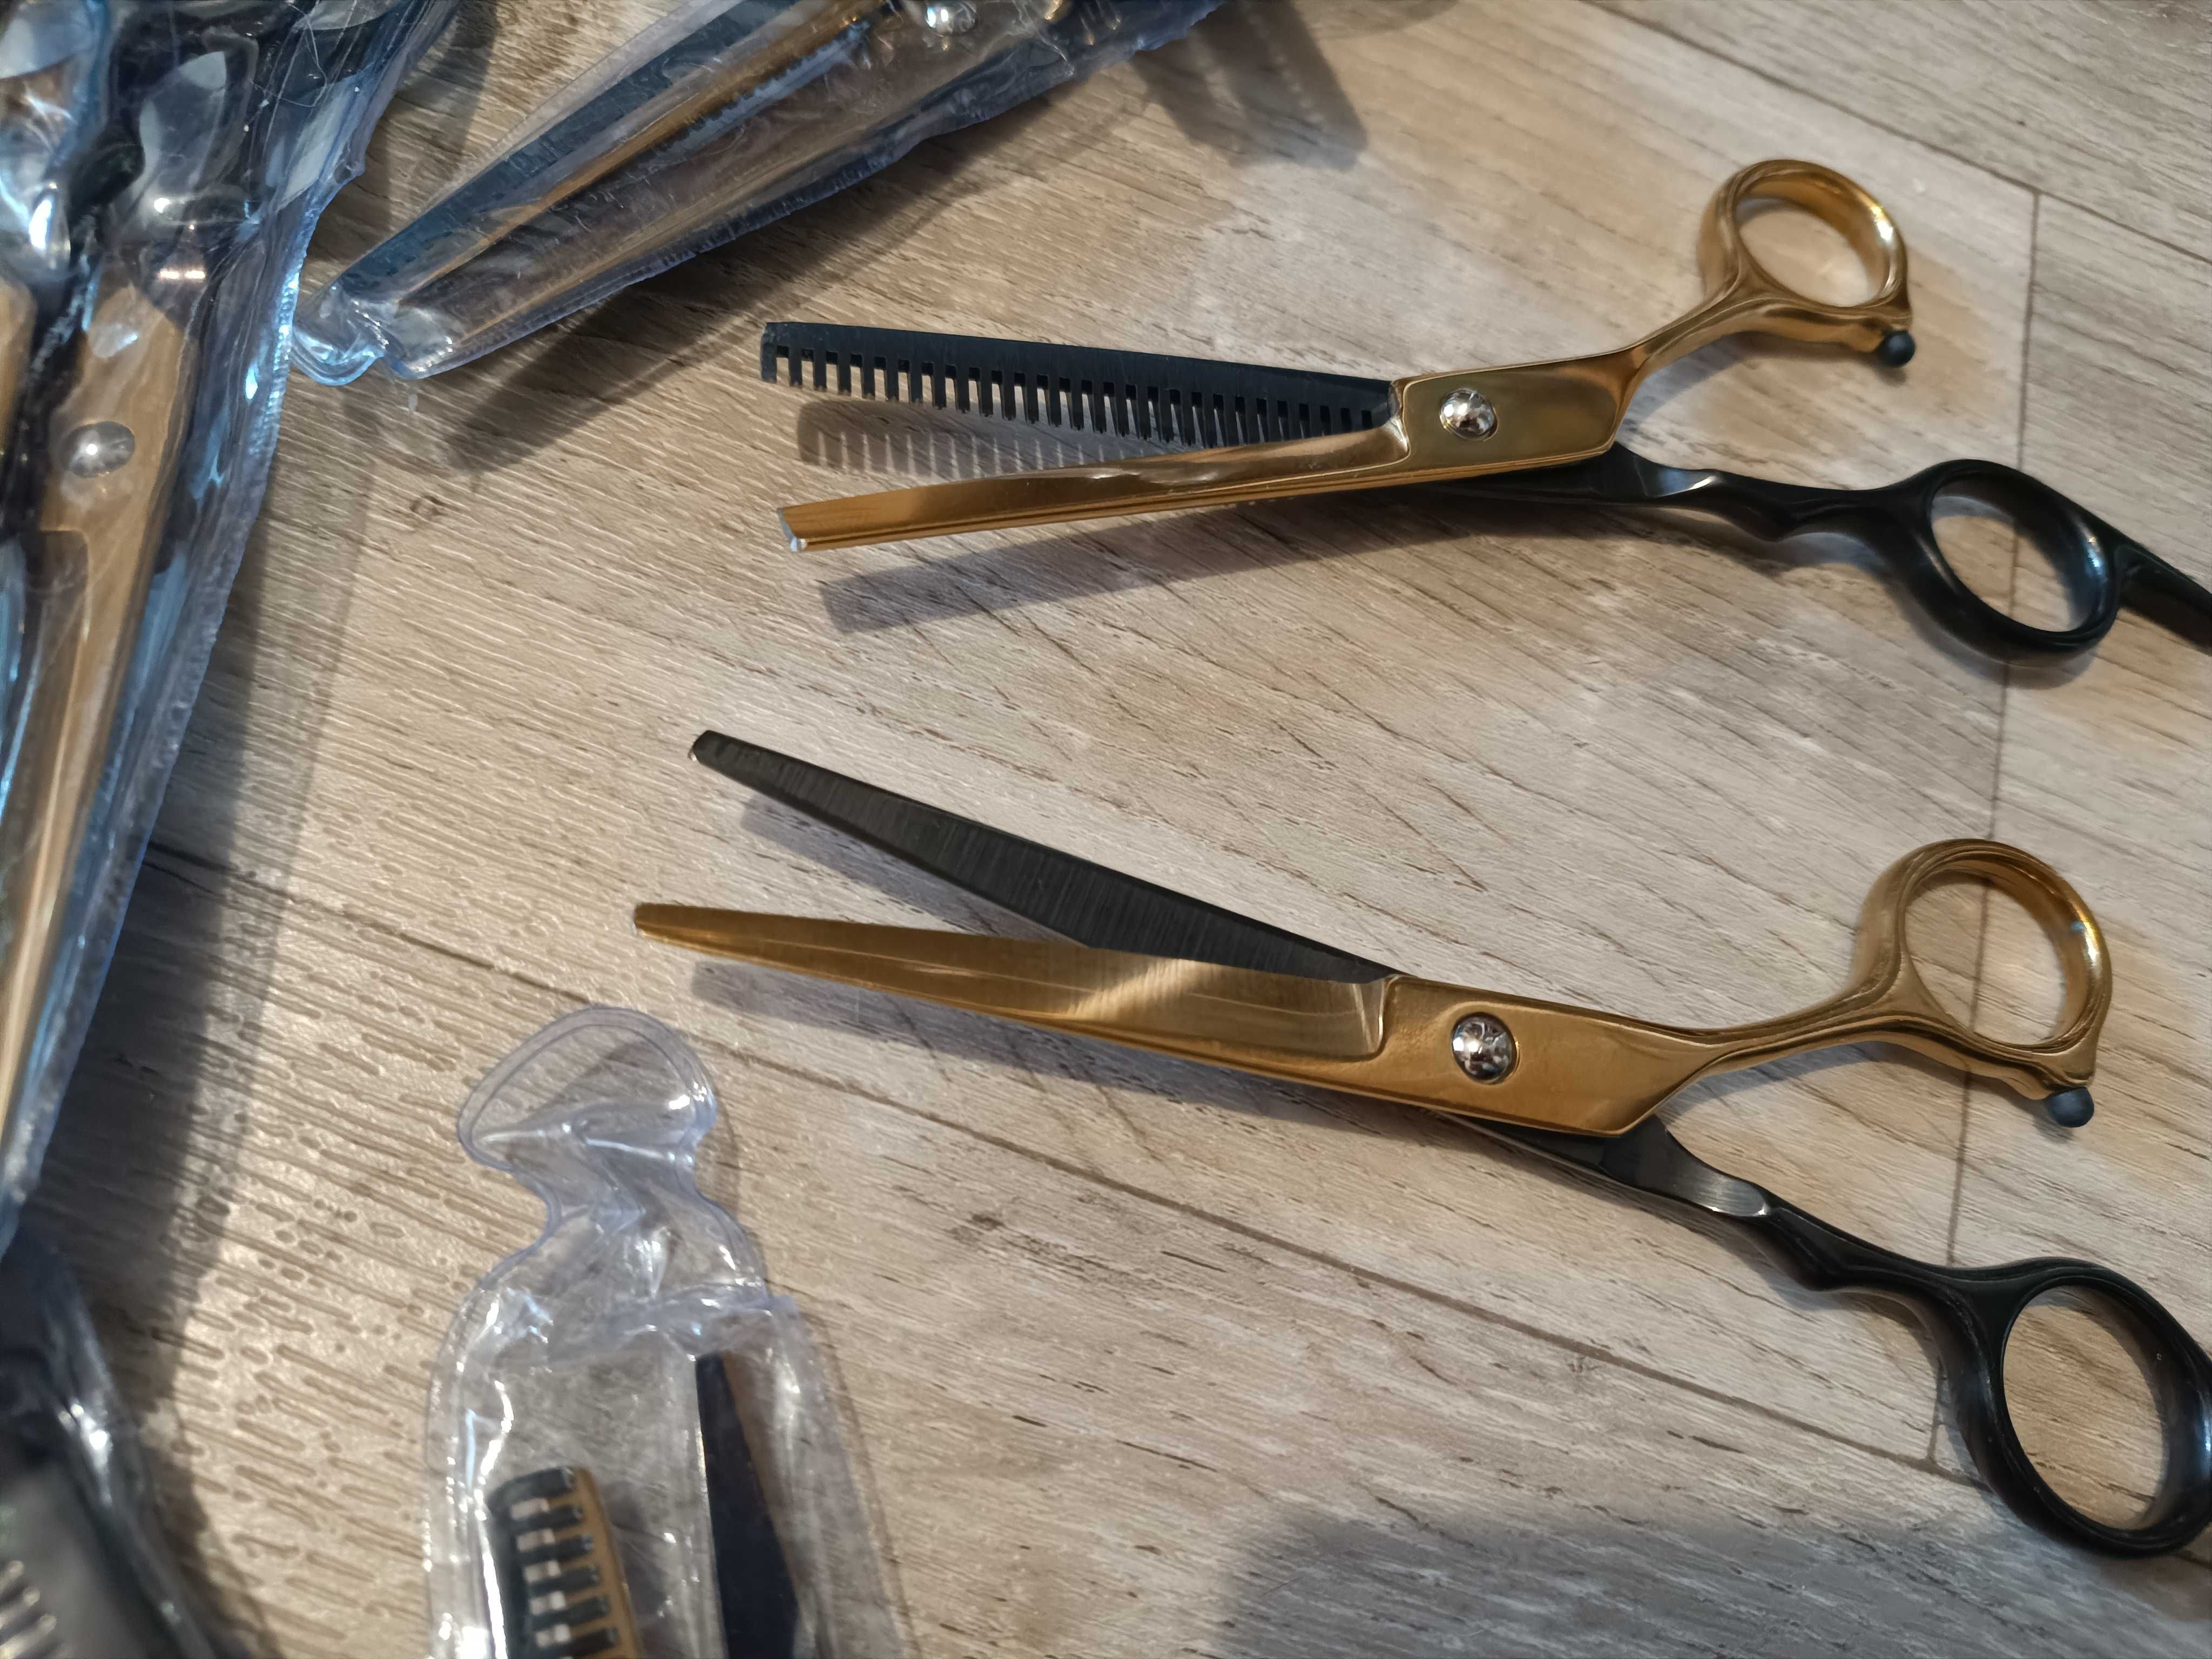 Парикмахерские ножницы для стрижки волос